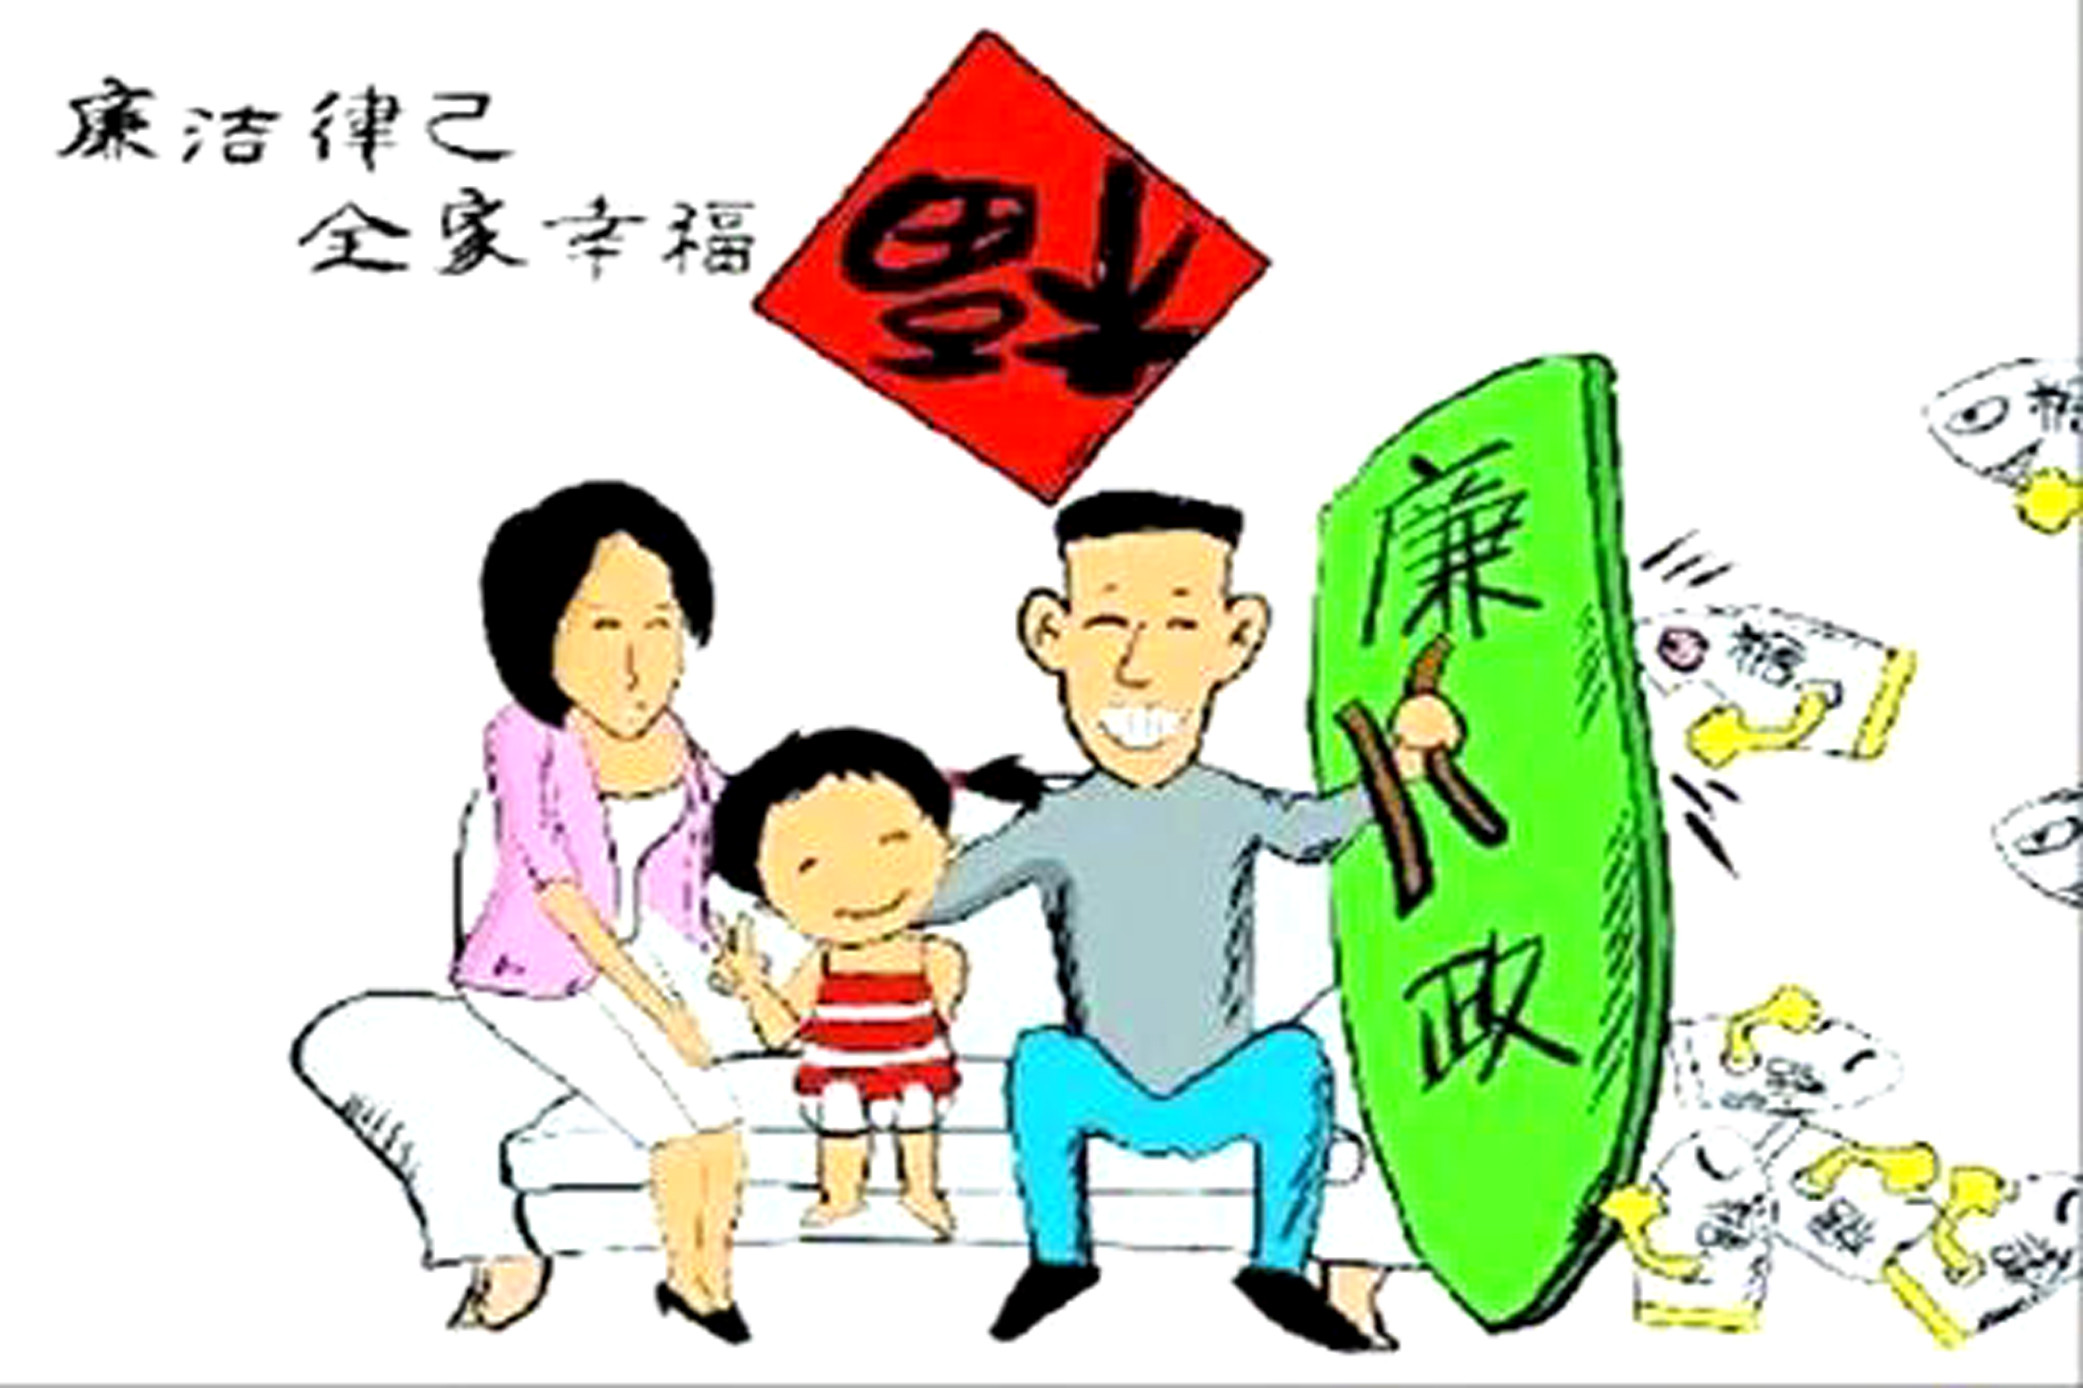 中华好家风动画宣传图片